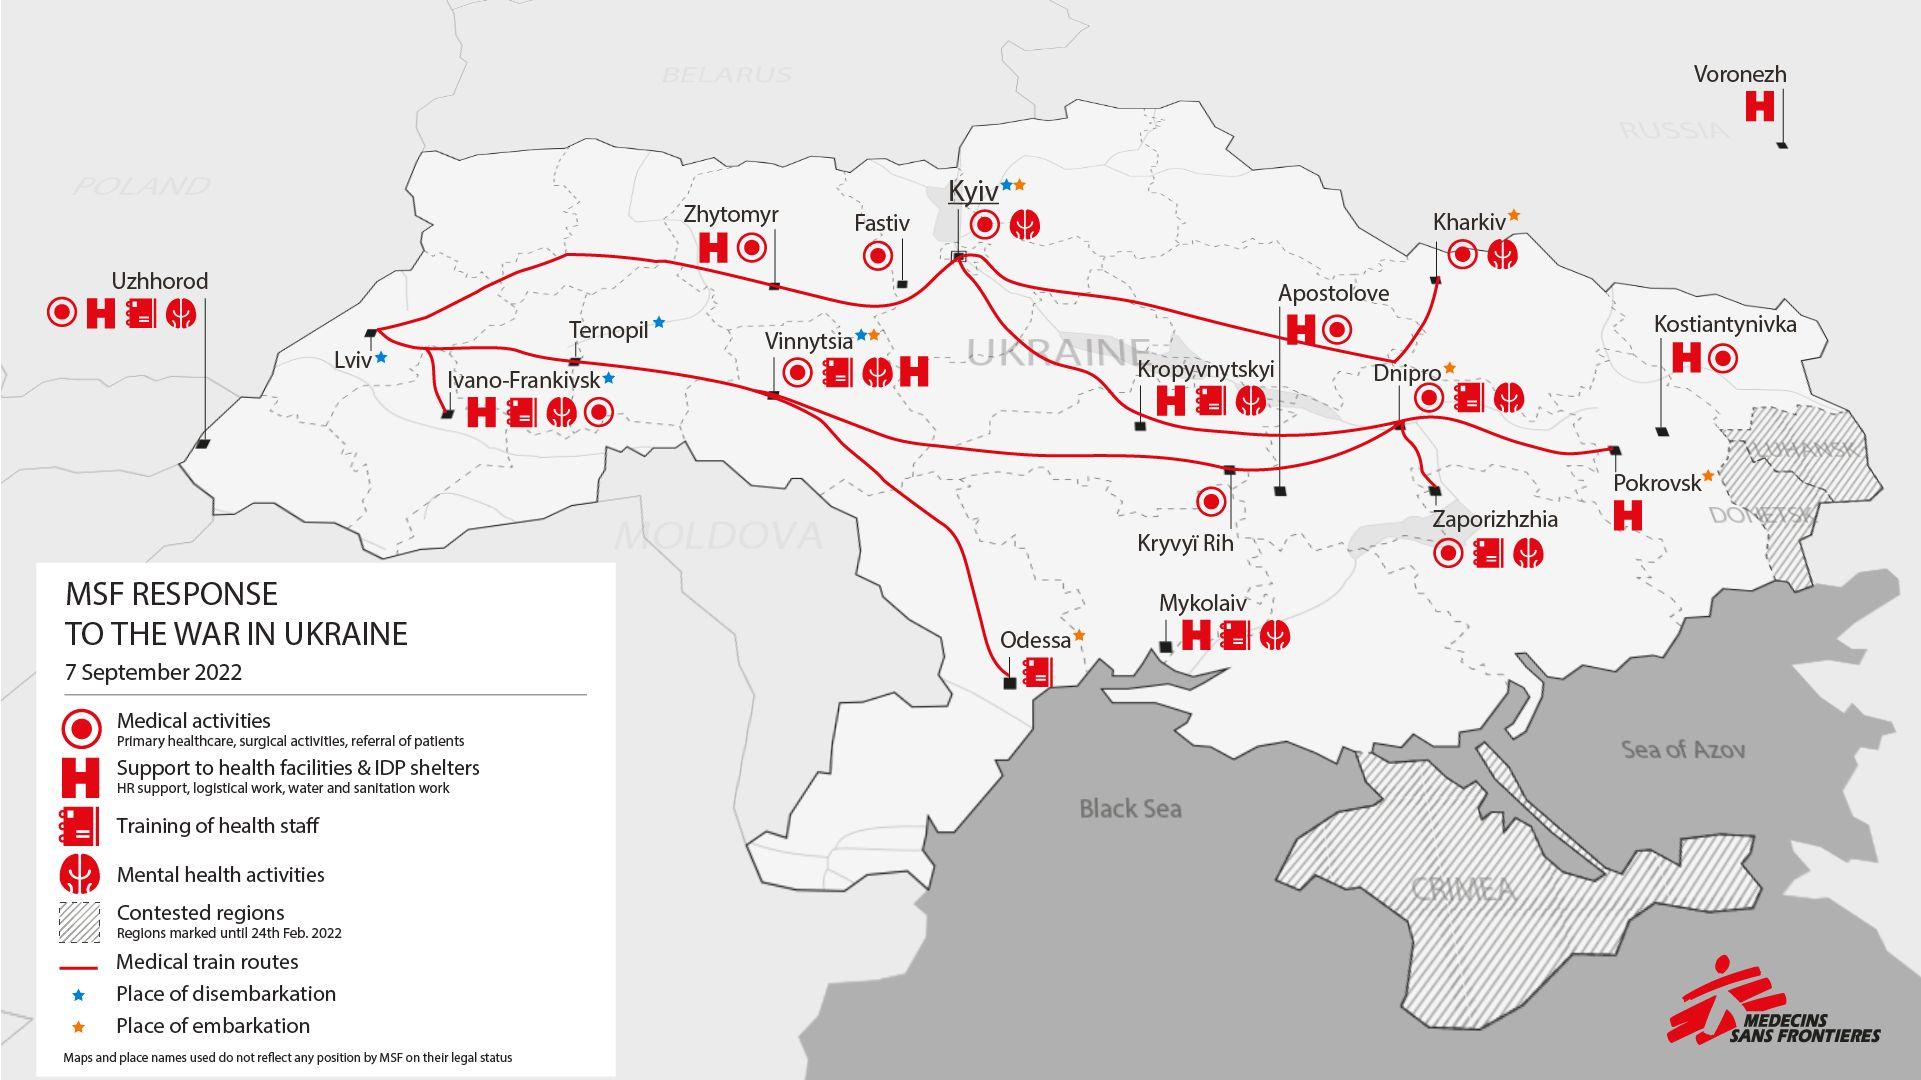 MSF Activities in Ukraine